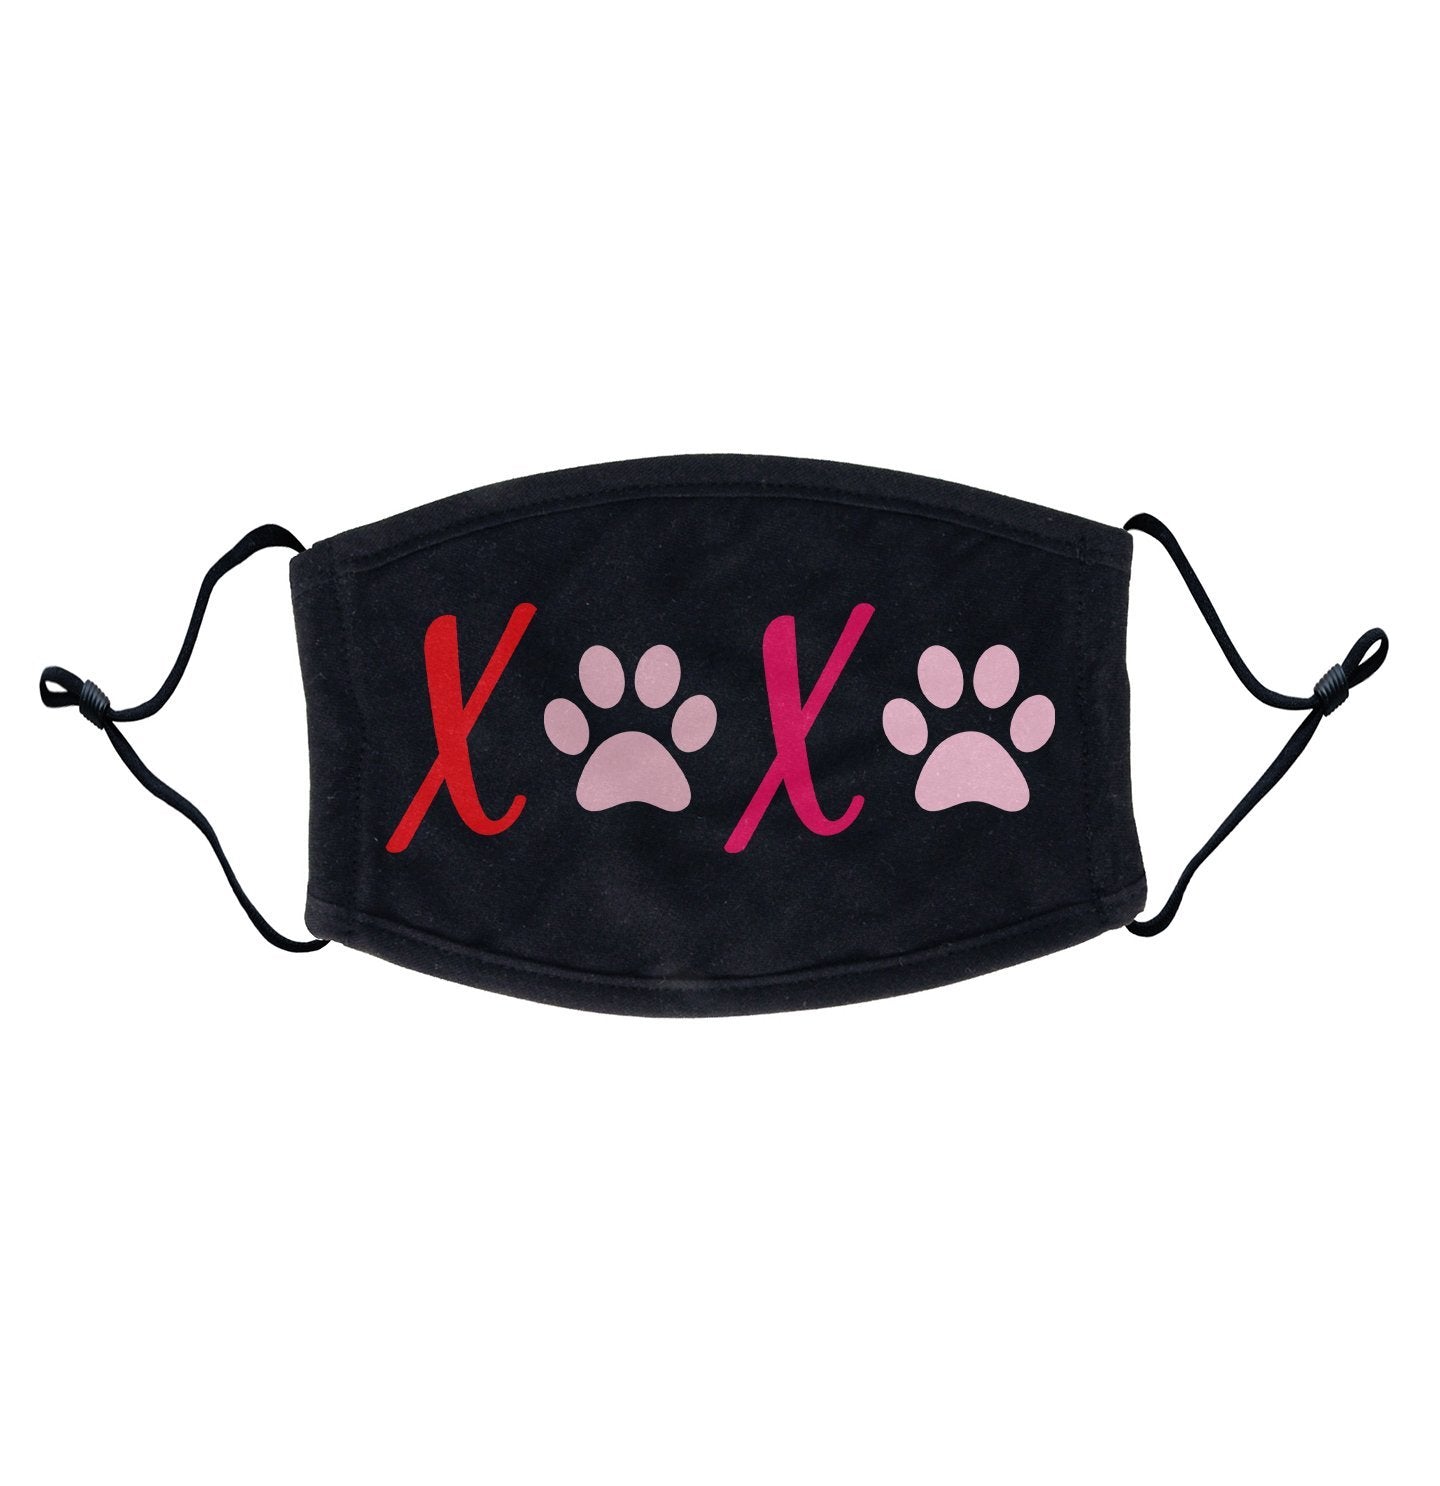 XOXO Dog Paws Adjustable Face Mask